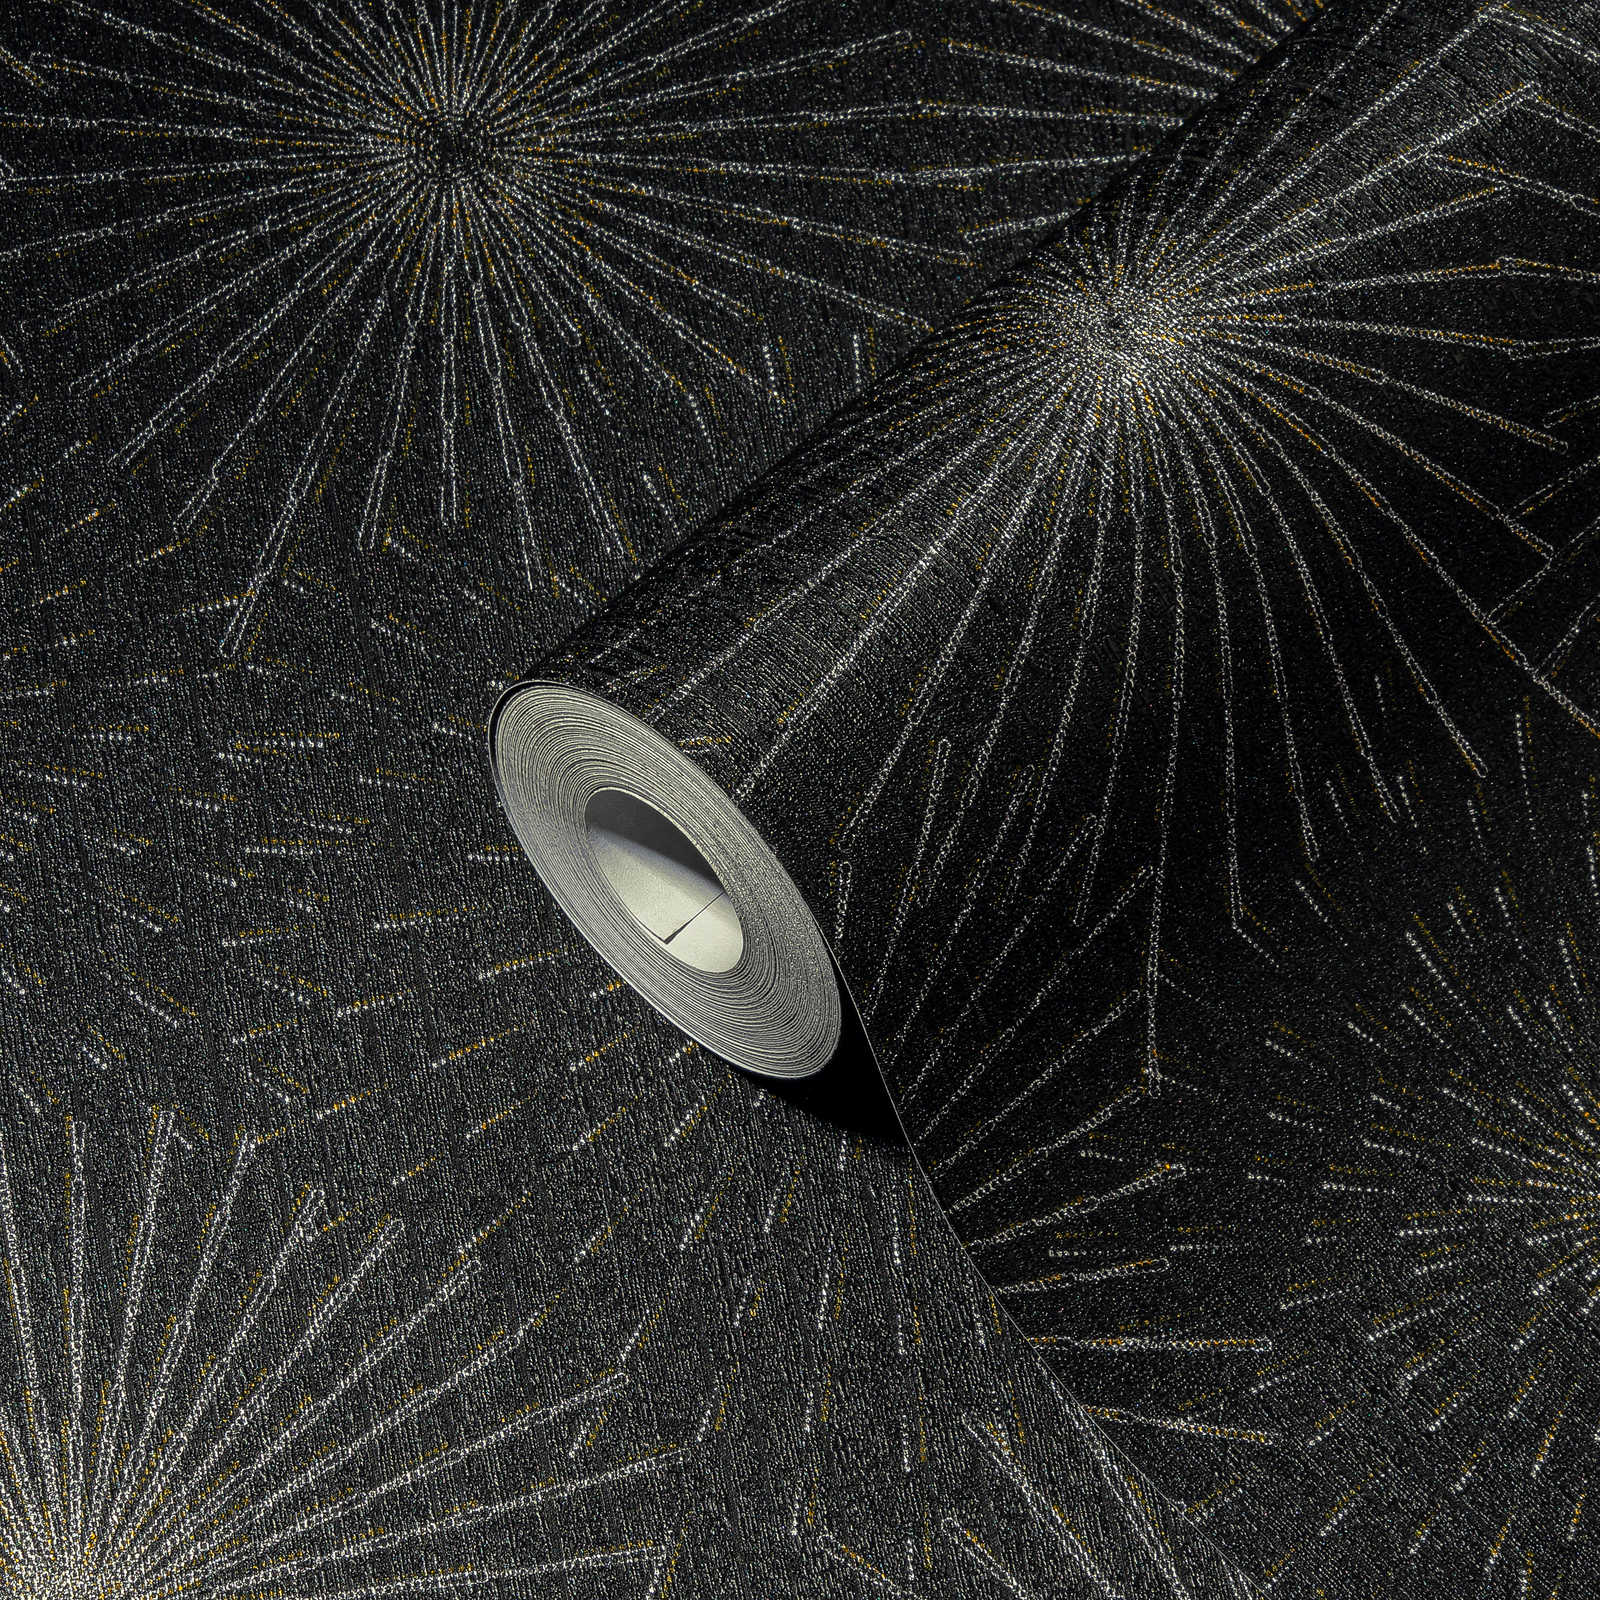             Retro behang 50s sterrensprong motief - zwart, metallic
        